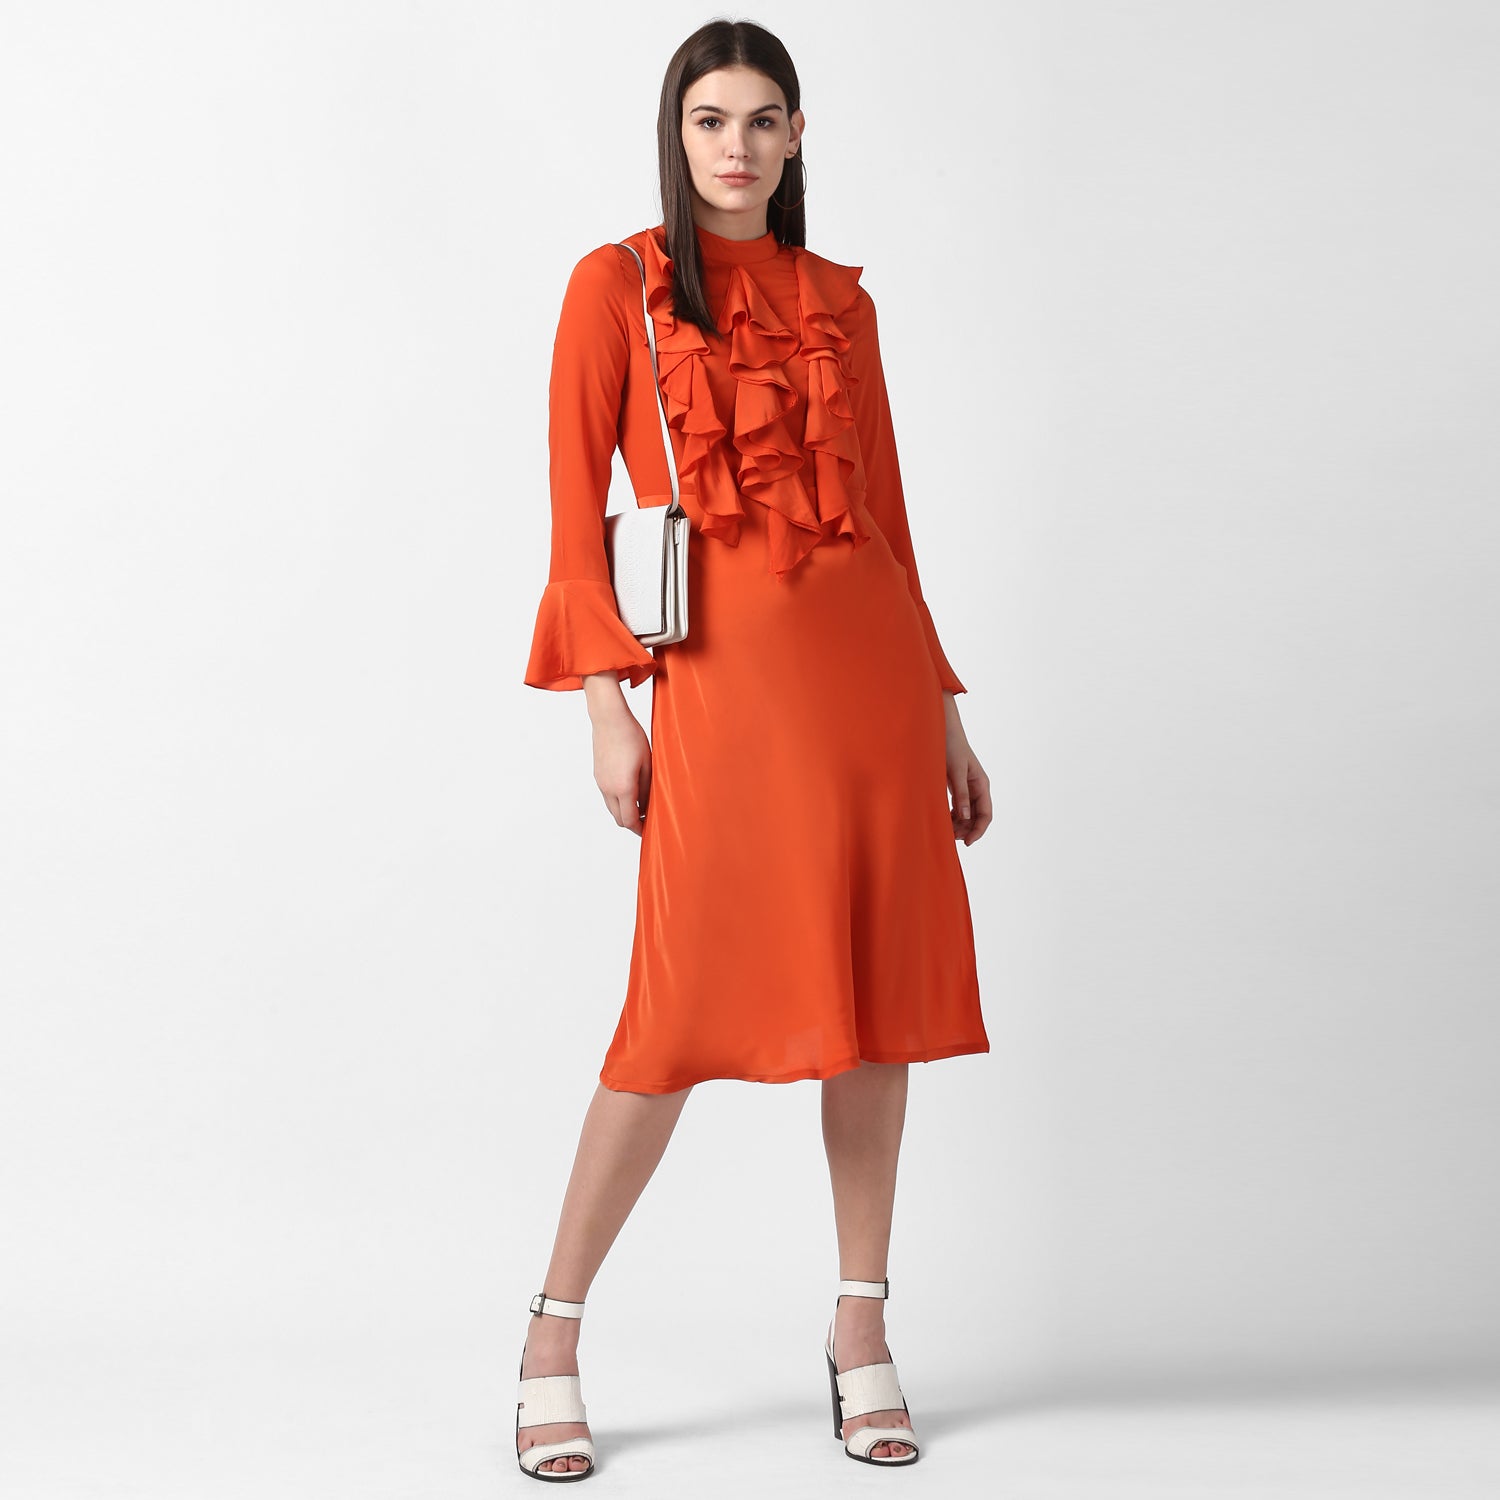 Women's Orange Front Ruffle Bell Sleeve Dress - StyleStone